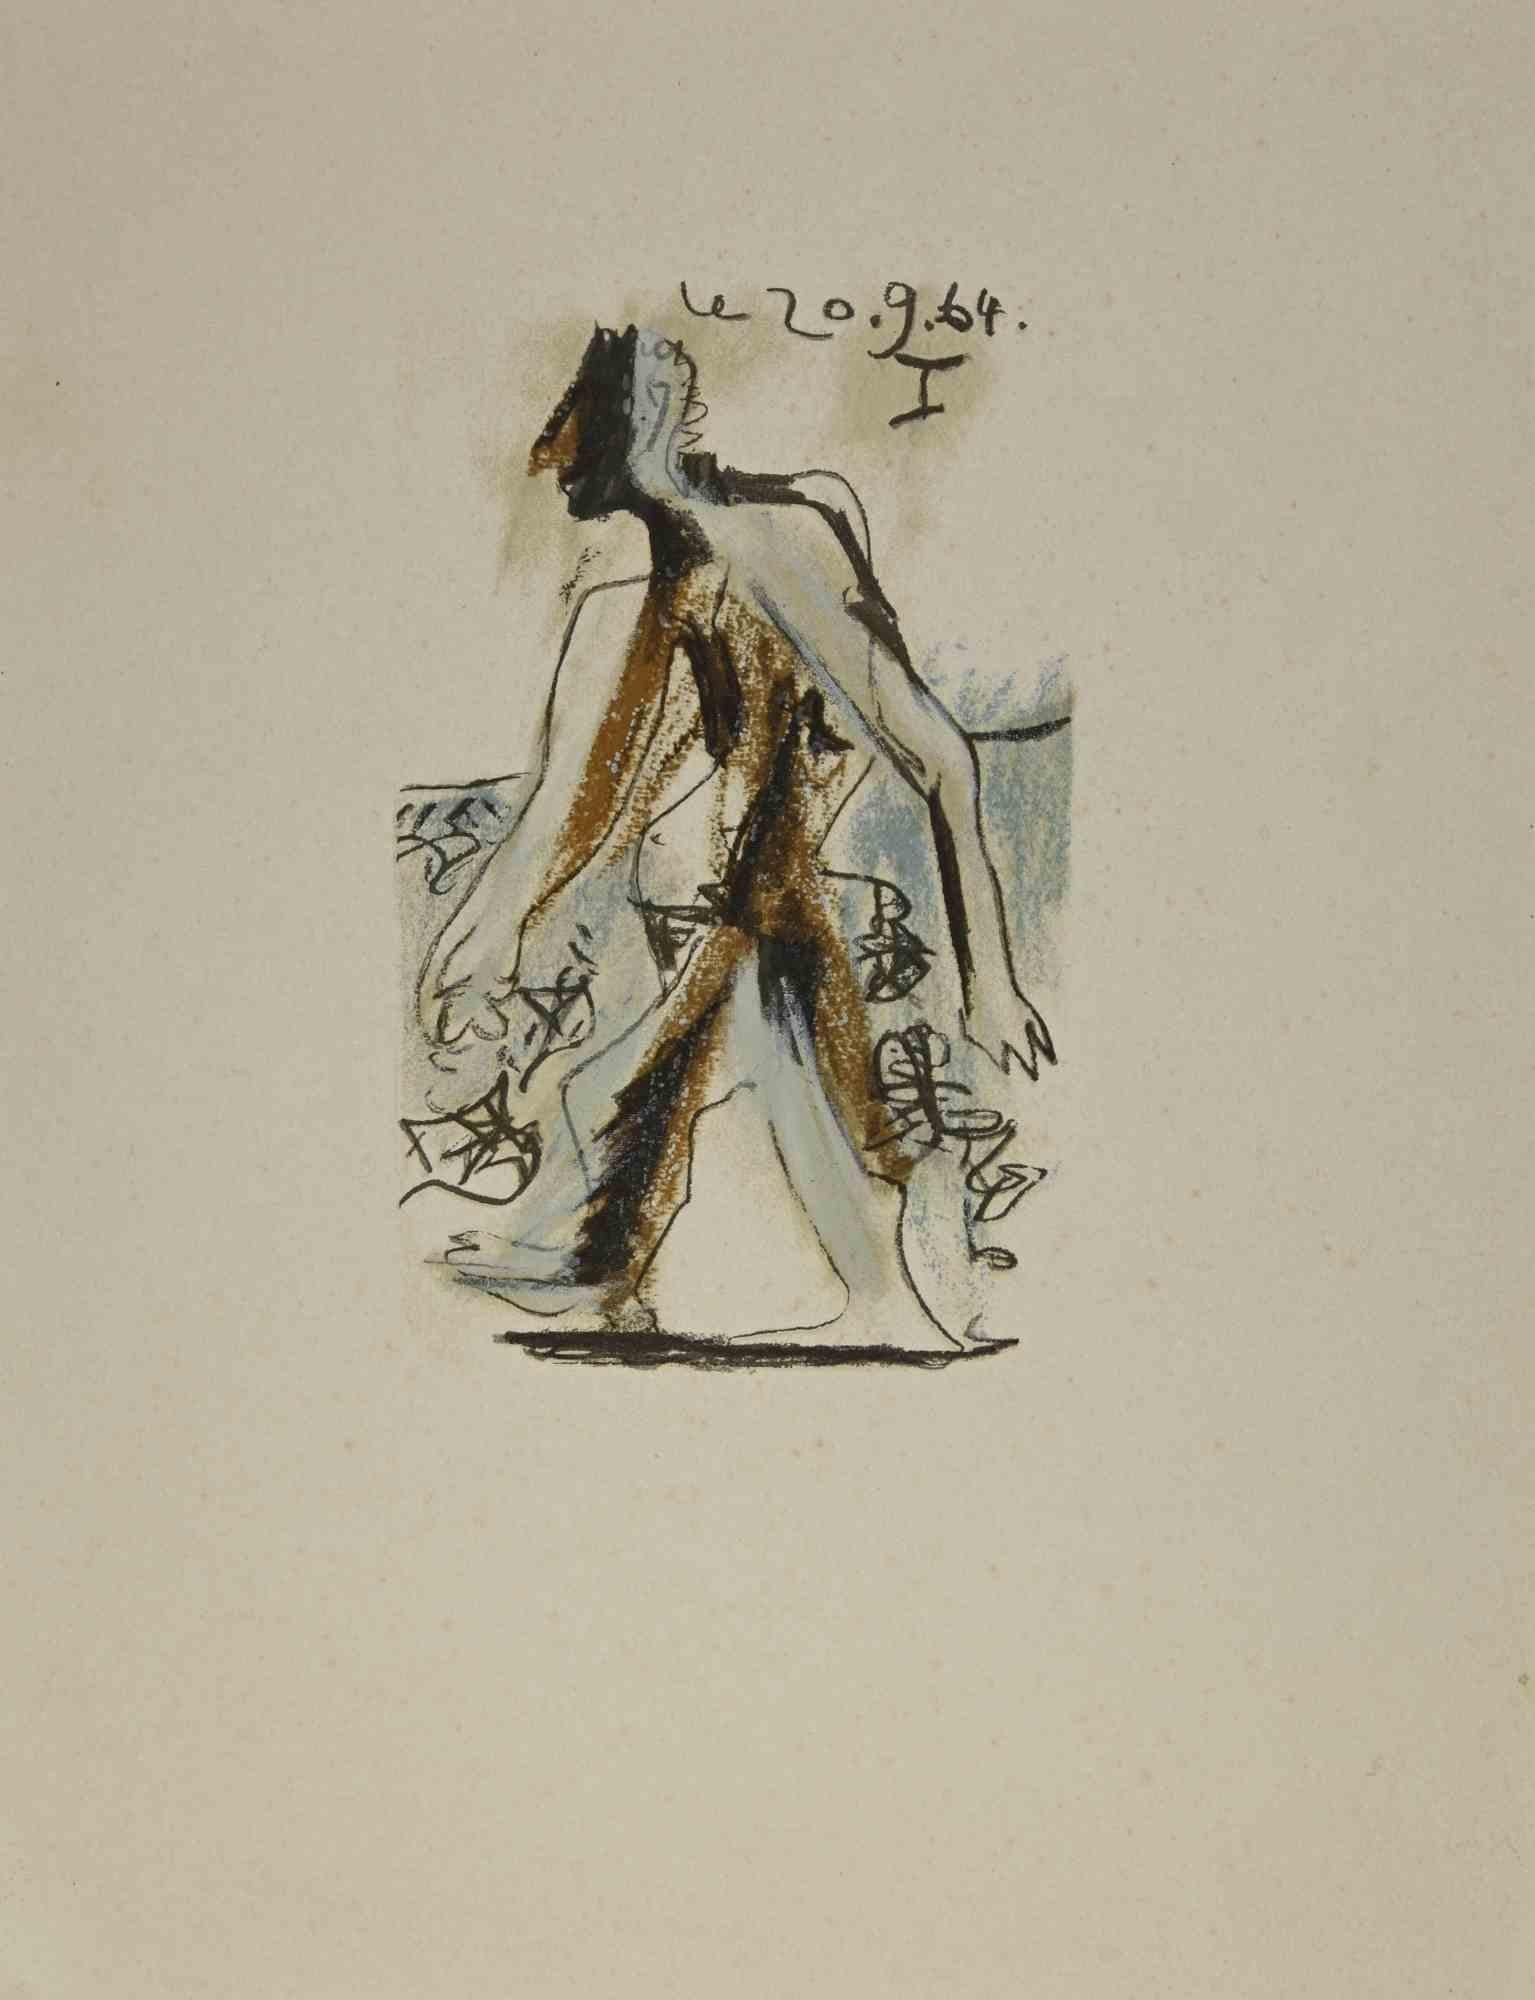 Le goût du Bonheur - 20.9.64 I ist eine 1970 gedruckte Farblithographie nach einem Original von Pablo Picasso aus dem Jahr 1964. Limitierte Auflage von 666 Stück. 

Le Goût du Bonheur (Der Geschmack des Glücks): A Suite of Happy, Playful, and Erotic